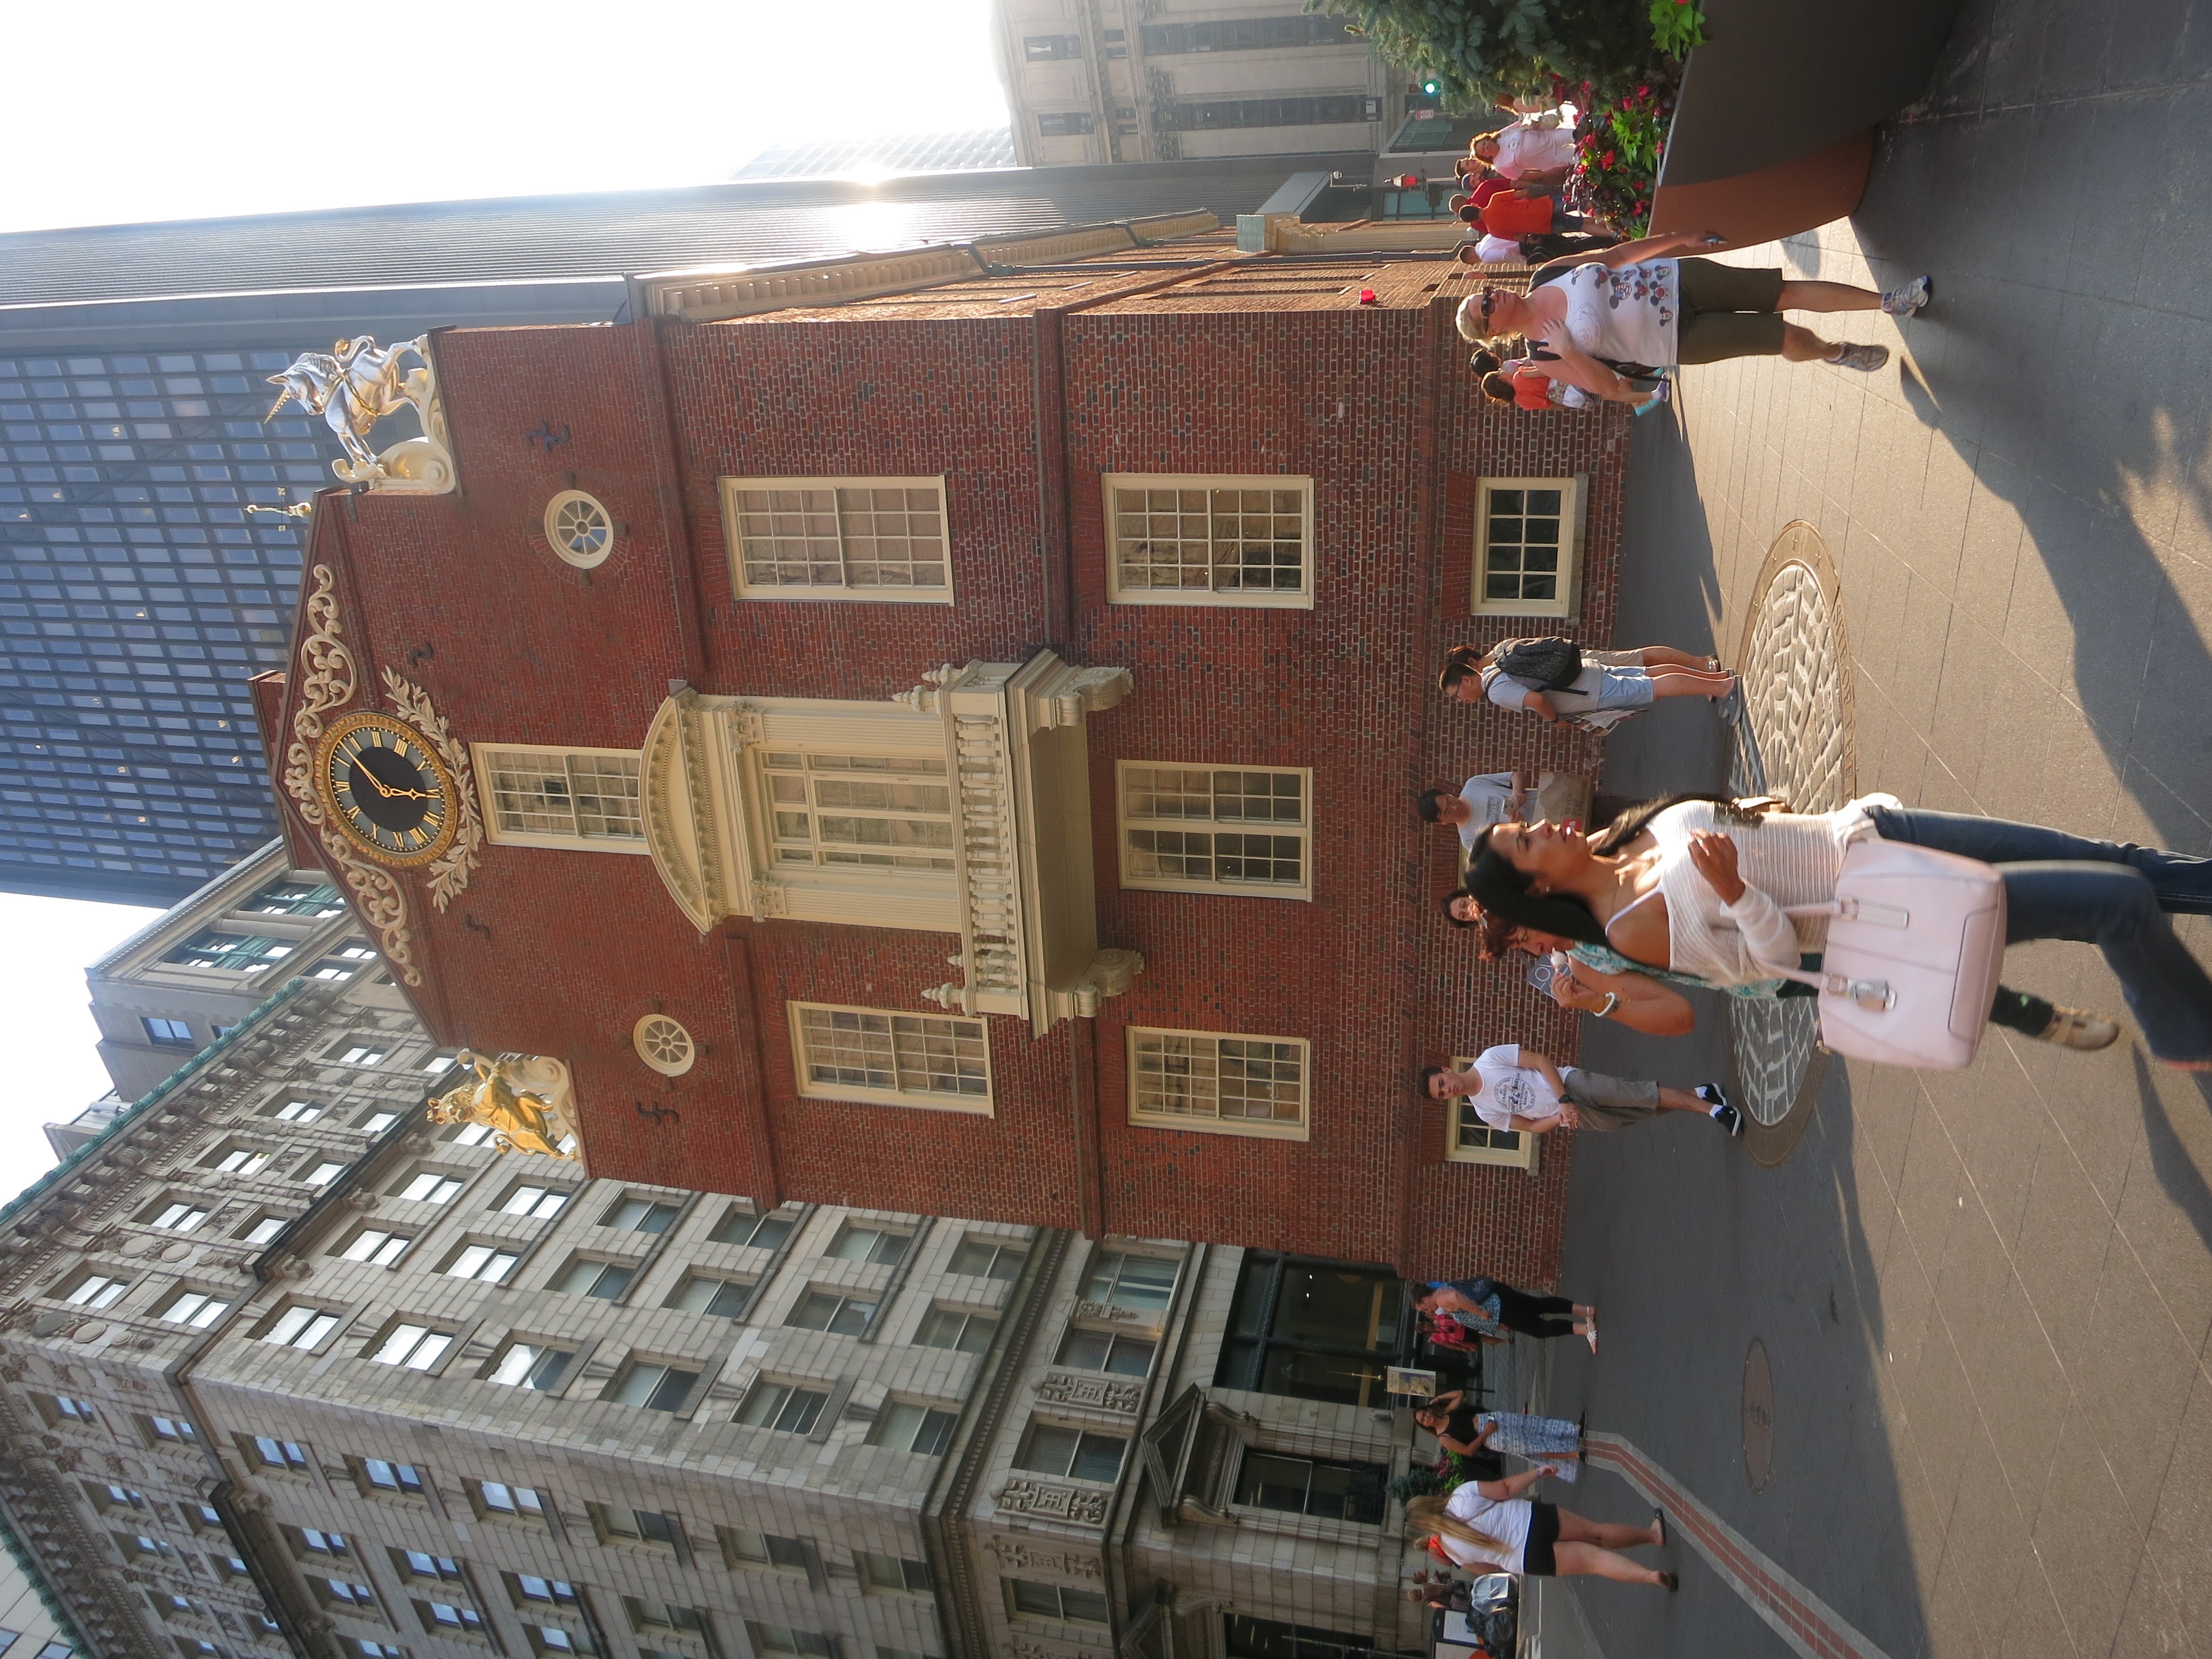 Ez a régi megyeháza (Old State House) épülete. A függetlenségi háború alatt ez volt Boston civil szerveződéseinek és üzleti életének központja.<br />Ennek az erkélyéről olvasták fel a Nyilatkozatot a polgároknak. Az épületben korabeli relikviák találhatóak, Paul Revere ezüstmunkája, muskéta a Lexingtoni csatából (ez volt az első ütközet az angol expedíciós hadsereg  - a vöröskabátosok - és az újonnan szerveződő Konföderációsok közt).<br />A homlokzatot díszítő, és az angol királyság uralkodását jelképező brit oroszlánt és egyszarvút a forradalom idején ledöntötték, csak később tették vissza a történelmi hűség kedvéért.<br />Az épület előtt a hatalmas rézkorong a járdában egy érdekes esemény színhelyét mutatja. Az esemény a Bostoni Tömegmészárlás néven él a köztudatban, köszönhetően Samuel Adamsnak, aki már akkor tudta, hogyan kell feltüzelni az embereket.<br />Kisebb spontán csődület verődött össze a megyeháza előtt, amelyik előbb hógolyókkal, majd kövekkel dobálta a járőröző angol katonákat. Amikor egy kő eltalálta a parancsnokukat, ő rálőtt a tömegre, majd tüzet is vezényelt. Öt bostoni maradt holtan vagy sebesülten a színhelyen, a többiek elszaladtak. <br />Samiel Adams jött, a holttesteknek megnyitotta a saját családi sírboltját, és minden levelében, cikkében és beszédében a tömegmészárlás szót használta. Valóban jól sikerült feltüzelnie és a függetlenség mellé állítania a tömeget. Milyen ismerős...